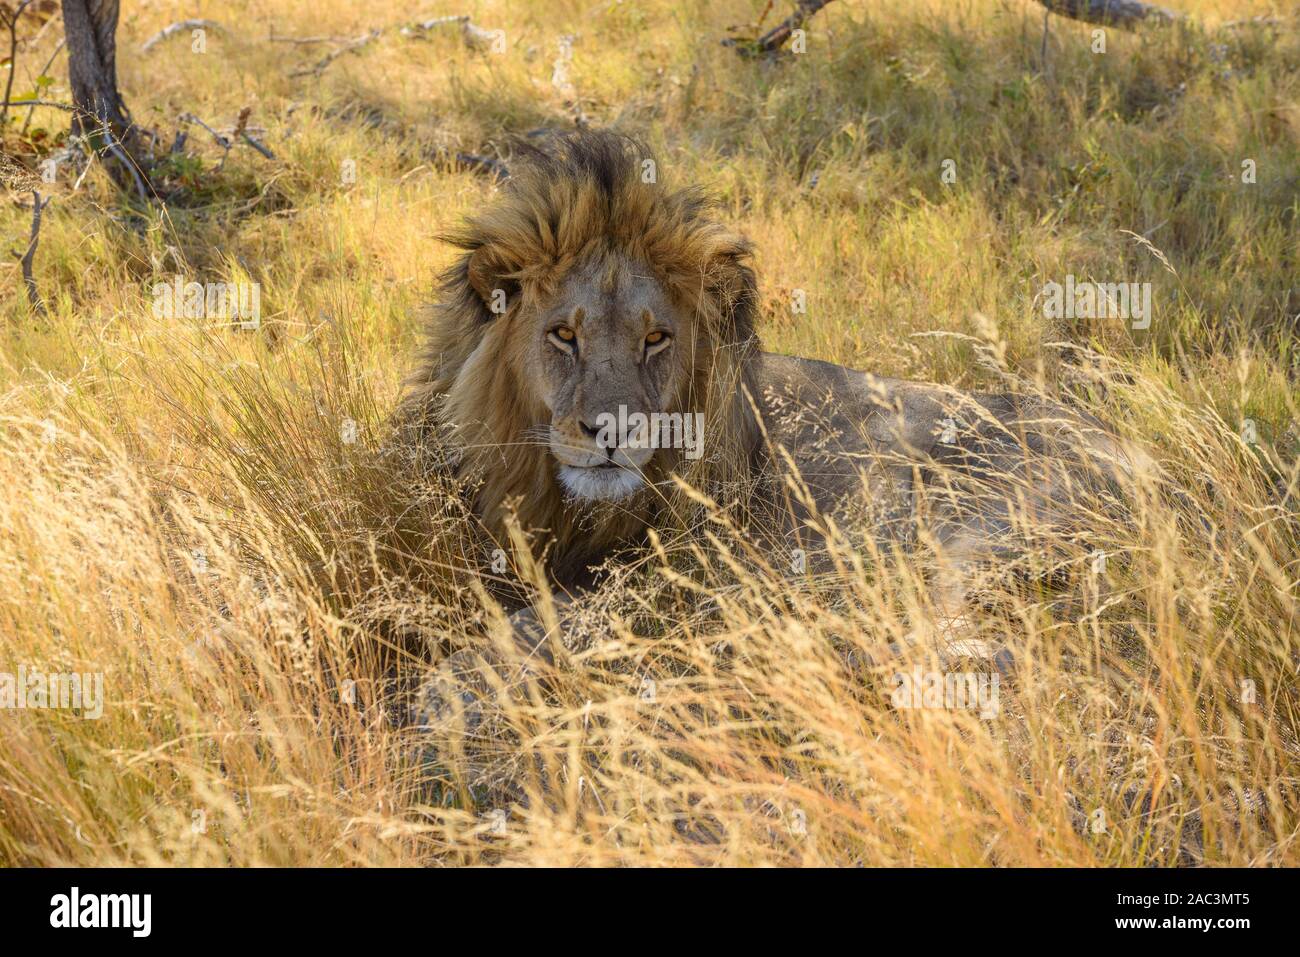 Männlicher Löwe, Panthera leo, in Langgras, Macatoo, Okavango Delta, Botswana Stockfoto